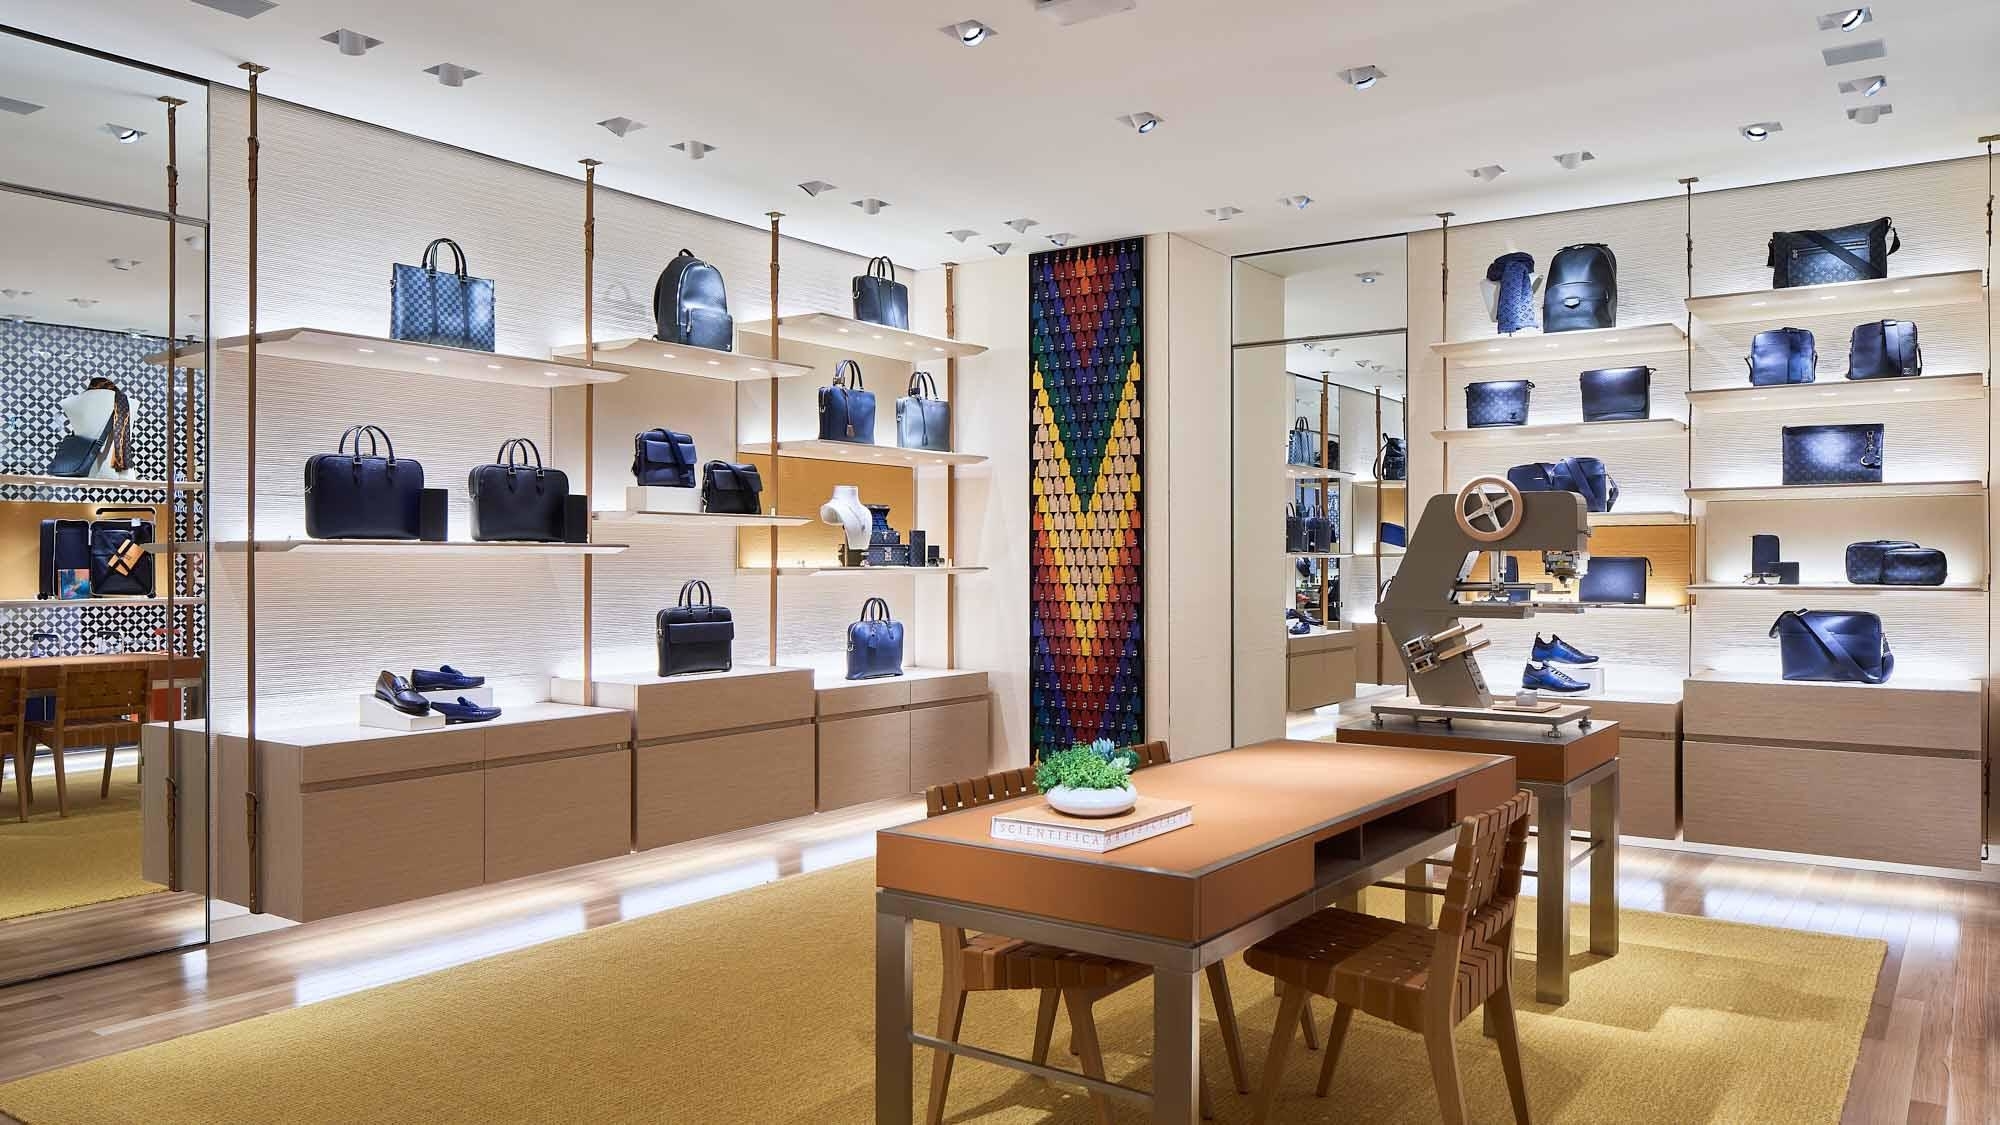 Louis Vuitton Holt Renfrew Vancouver - Luggage Stores